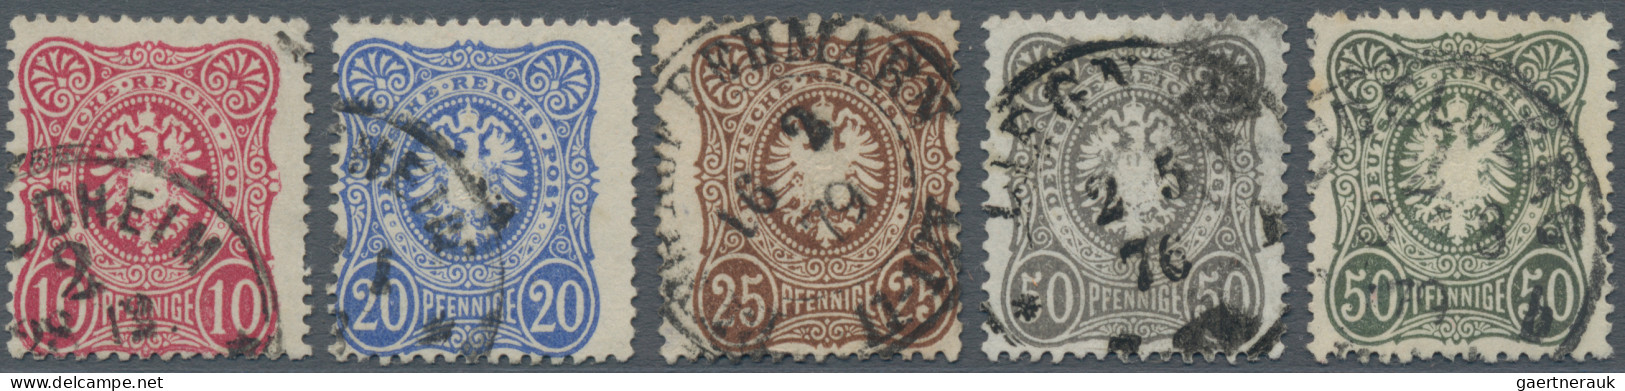 Deutsches Reich - Pfennige: 1875/1879, Lot Von Fünf Gestempelten Marken: MiNr. 3 - Sammlungen